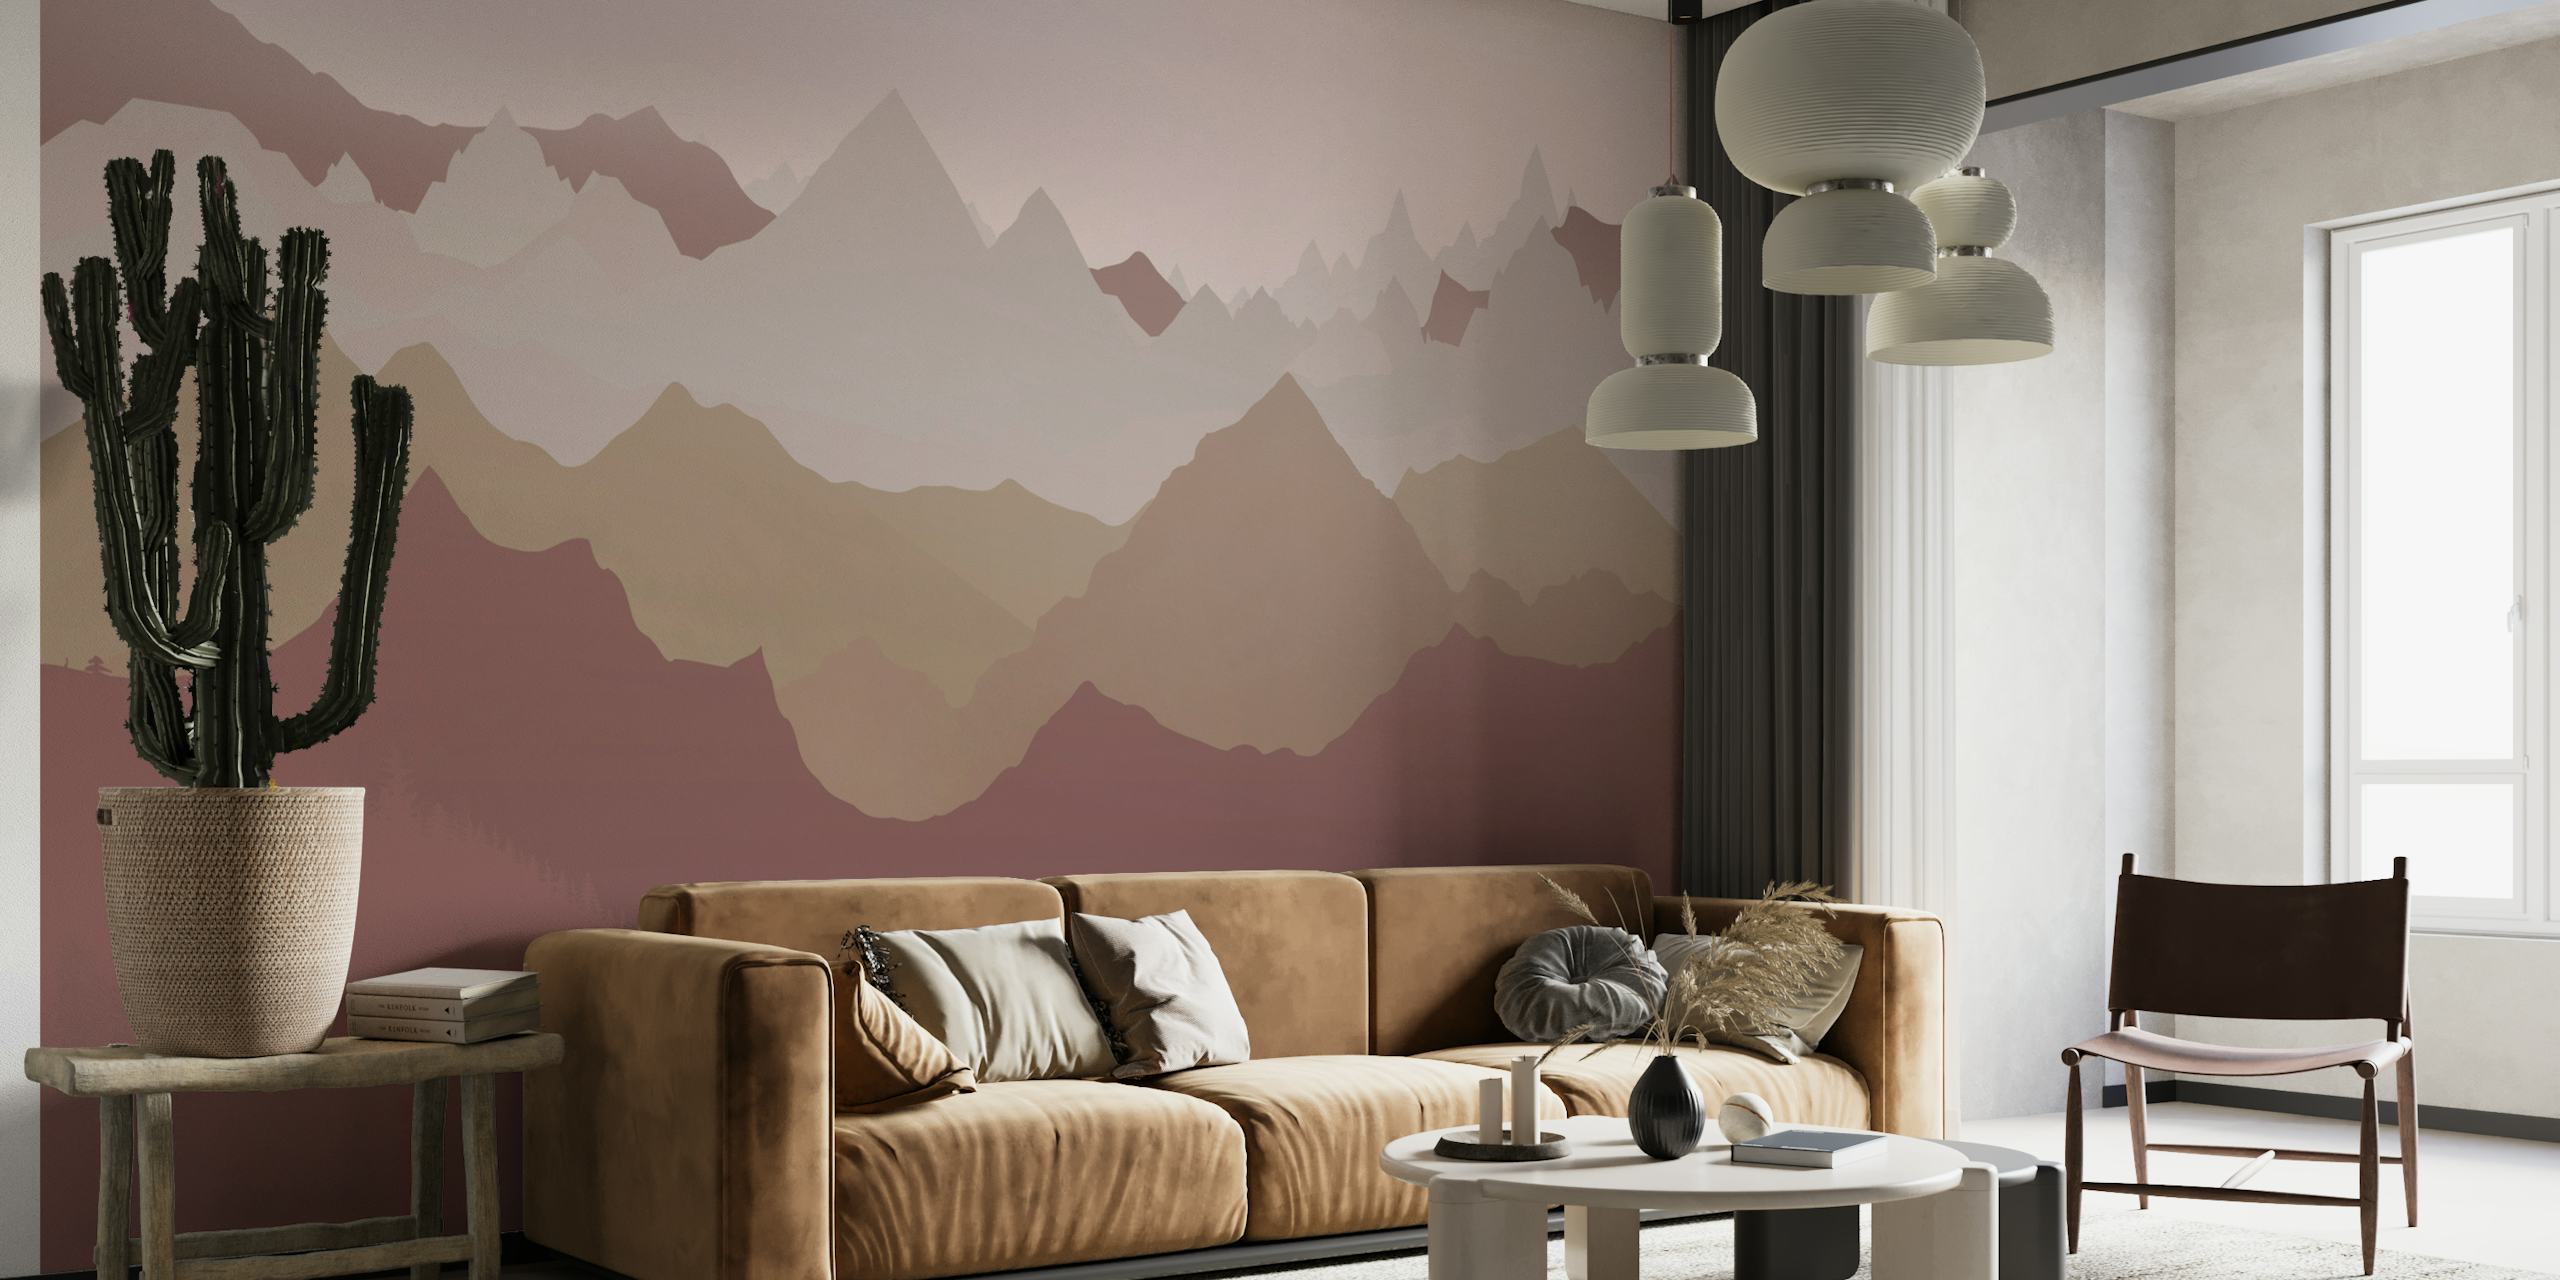 Fotomural estilizados picos de montañas ocres y beige sobre un fondo rosa polvoriento